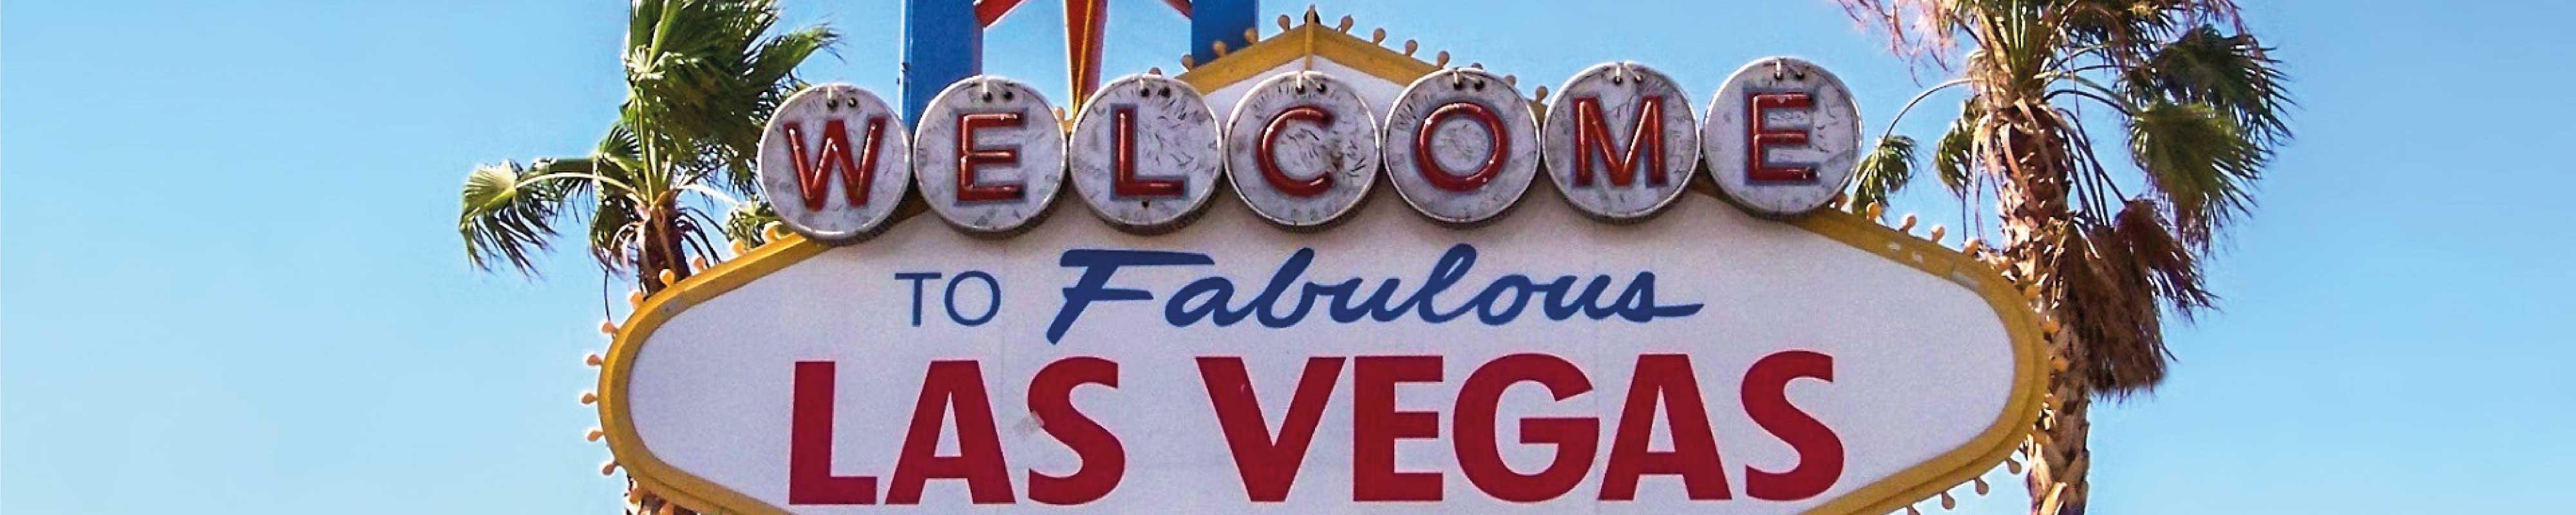 Depósito de Bagagem | Convention Center em Las Vegas - Nannybag